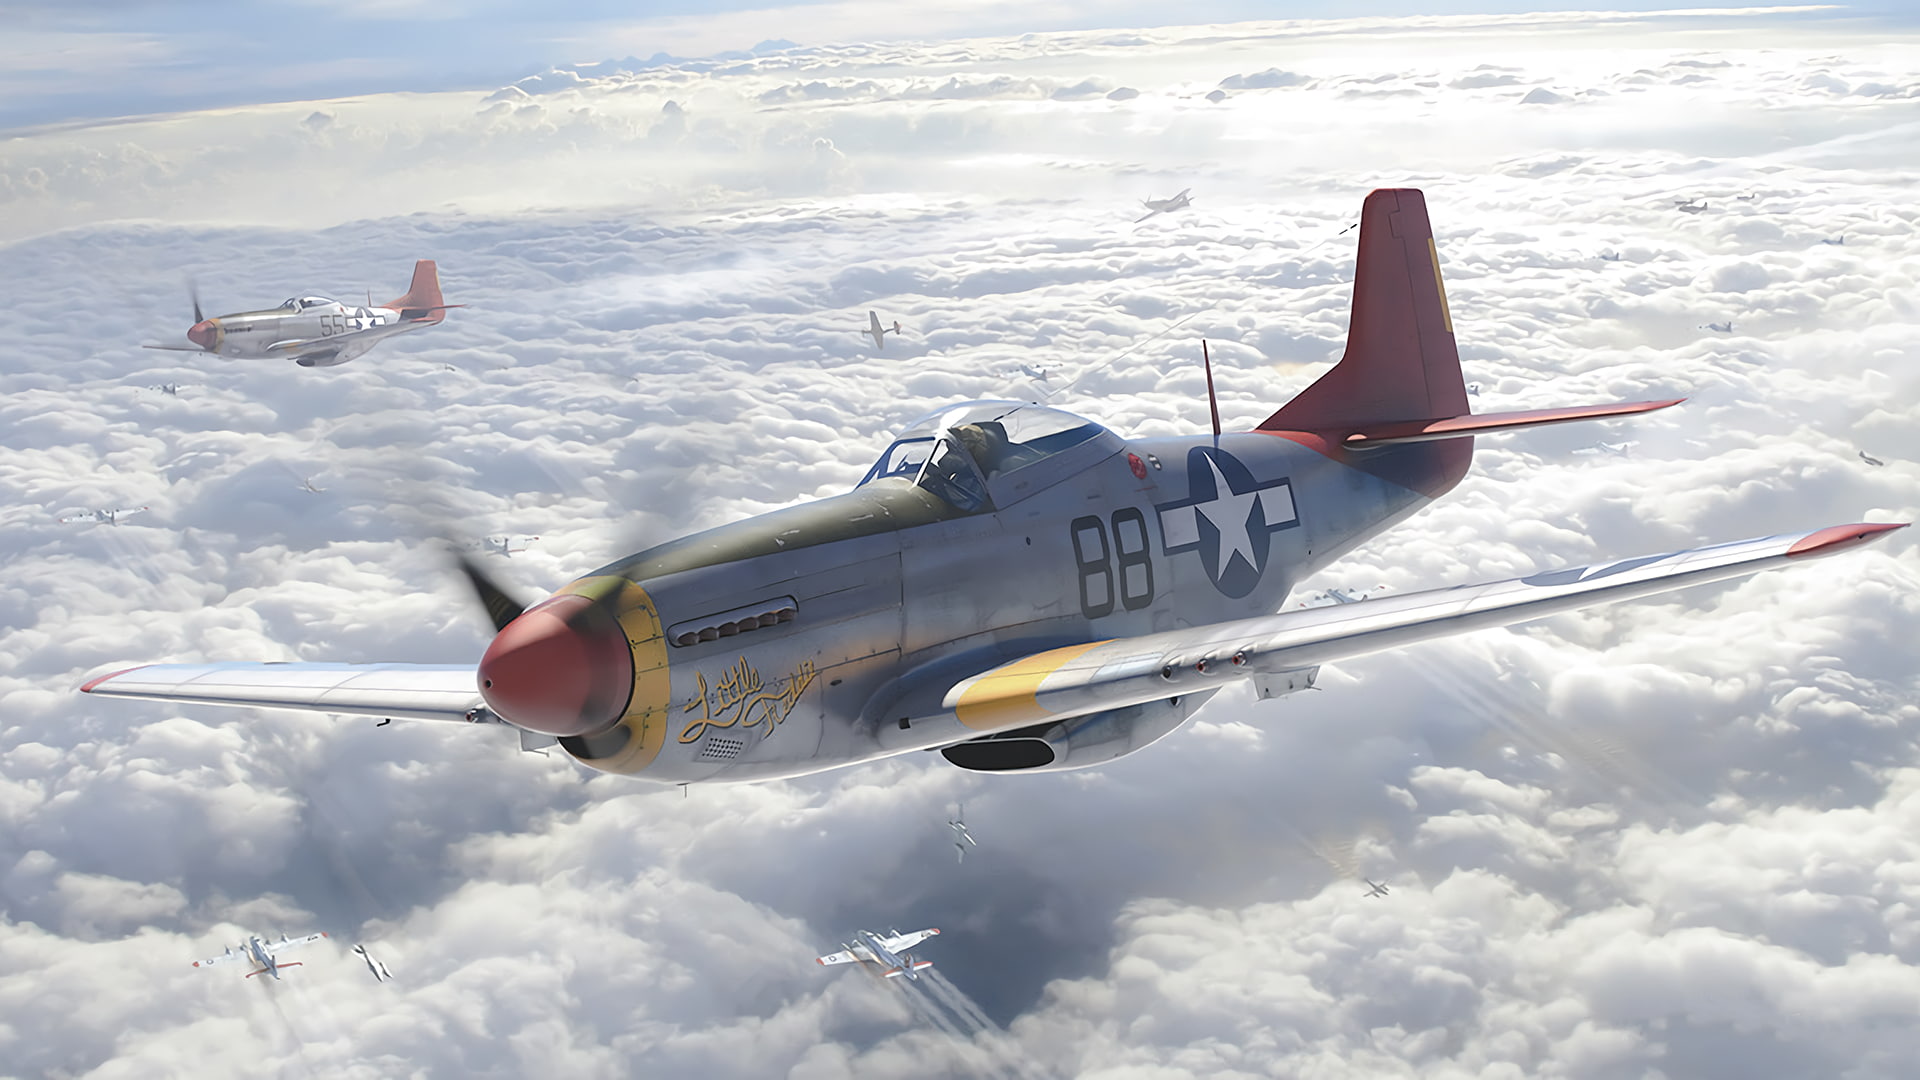 North American P-51 Mustang, military aircraft, digital art